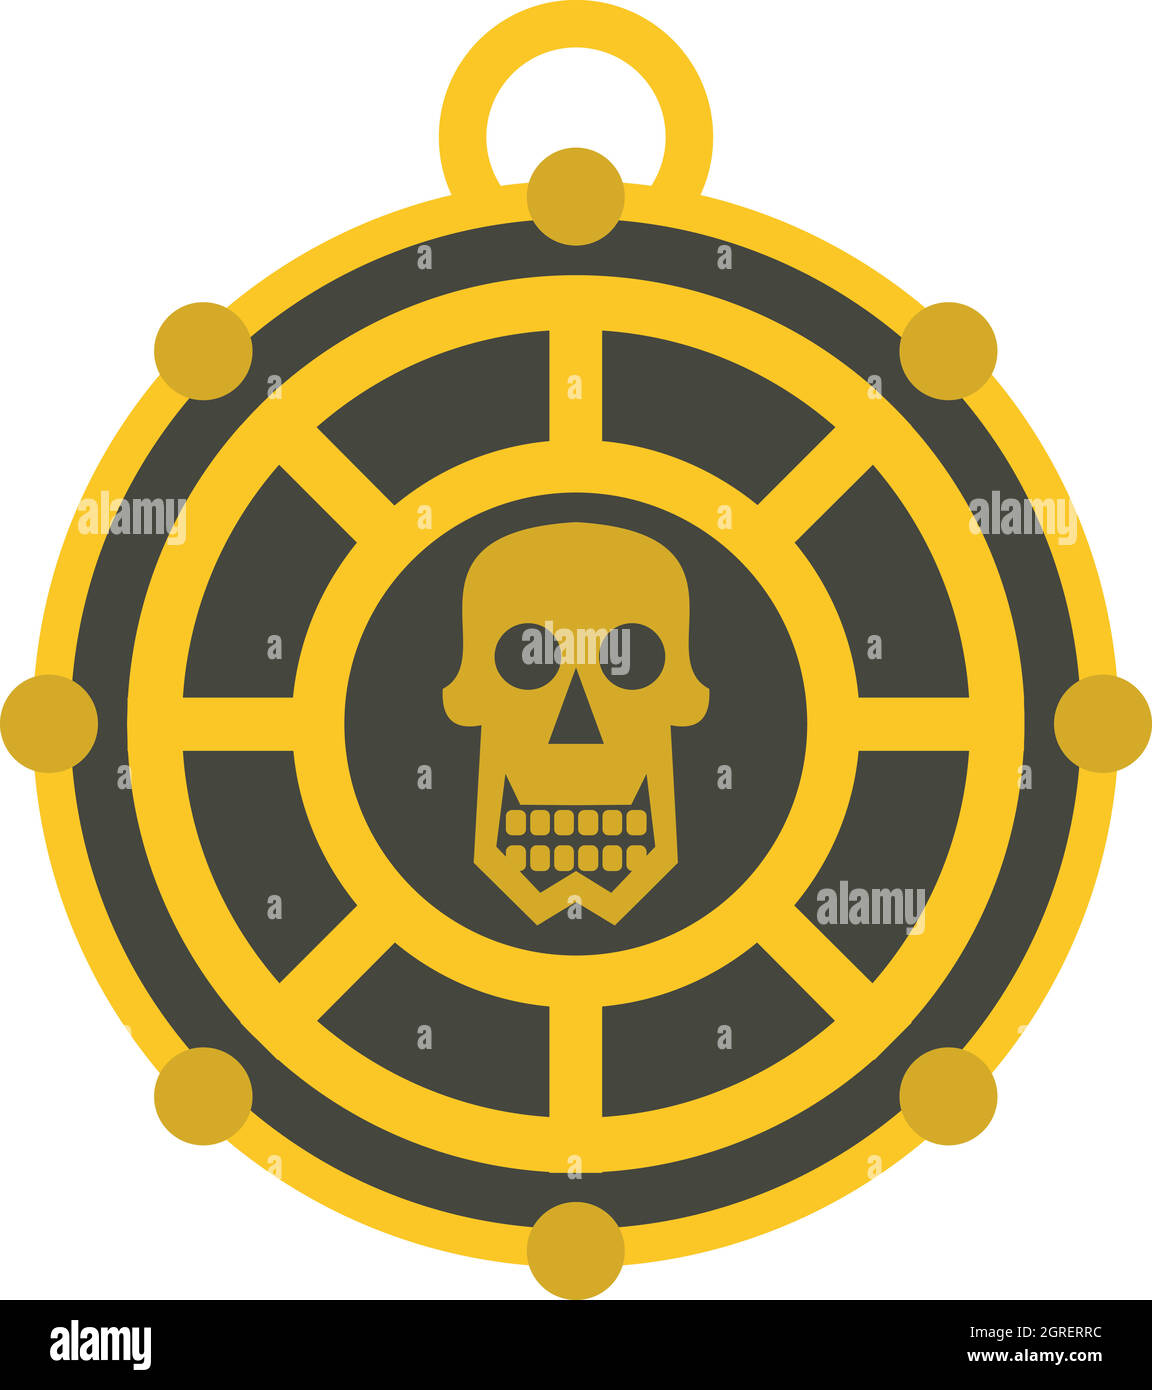 Crâne humain, icône médaillon aztèque style plat Illustration de Vecteur